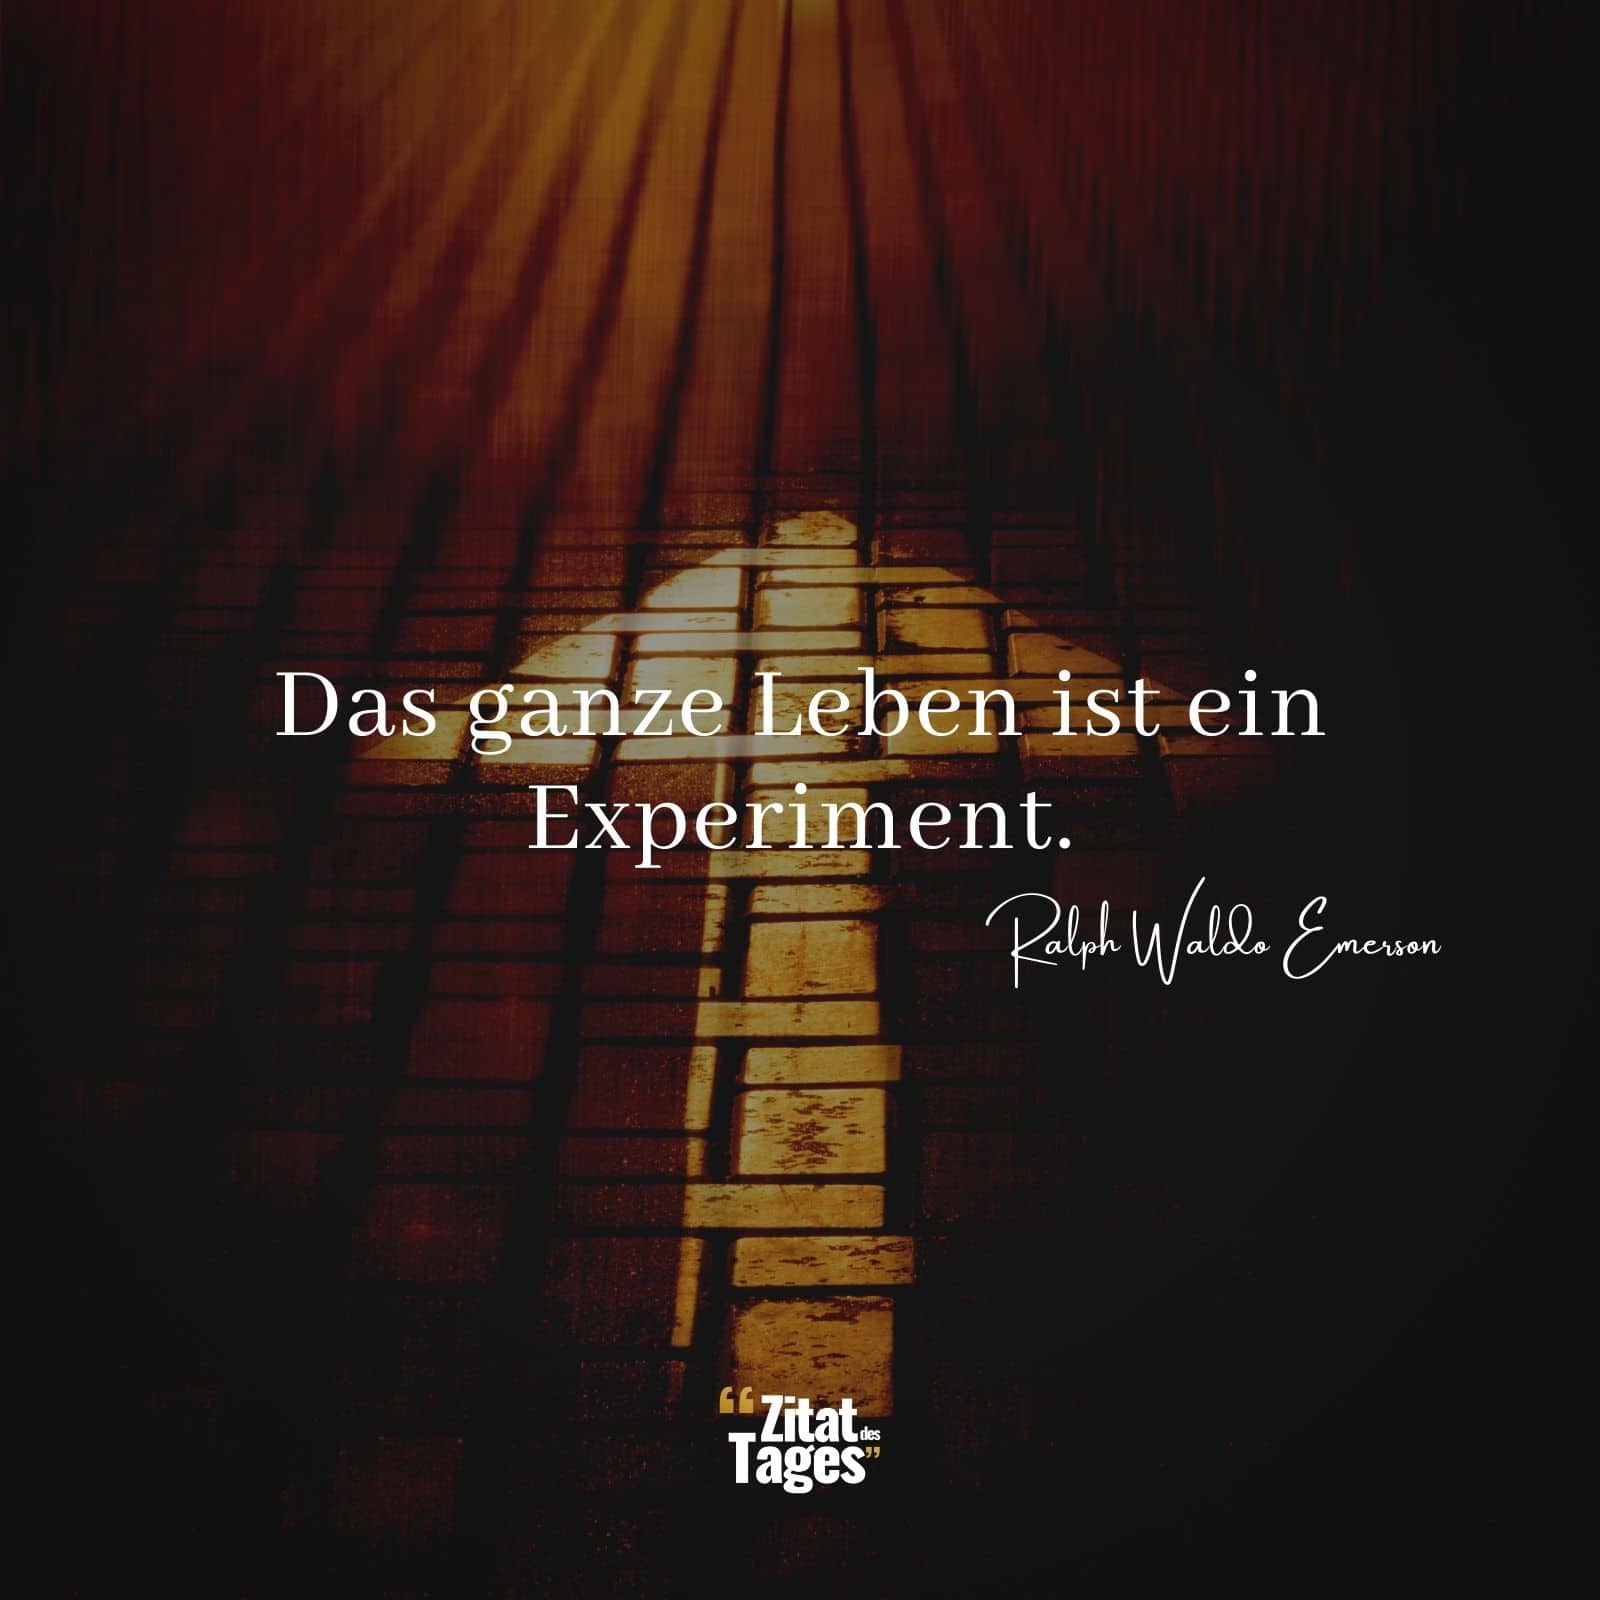 Das ganze Leben ist ein Experiment. - Ralph Waldo Emerson